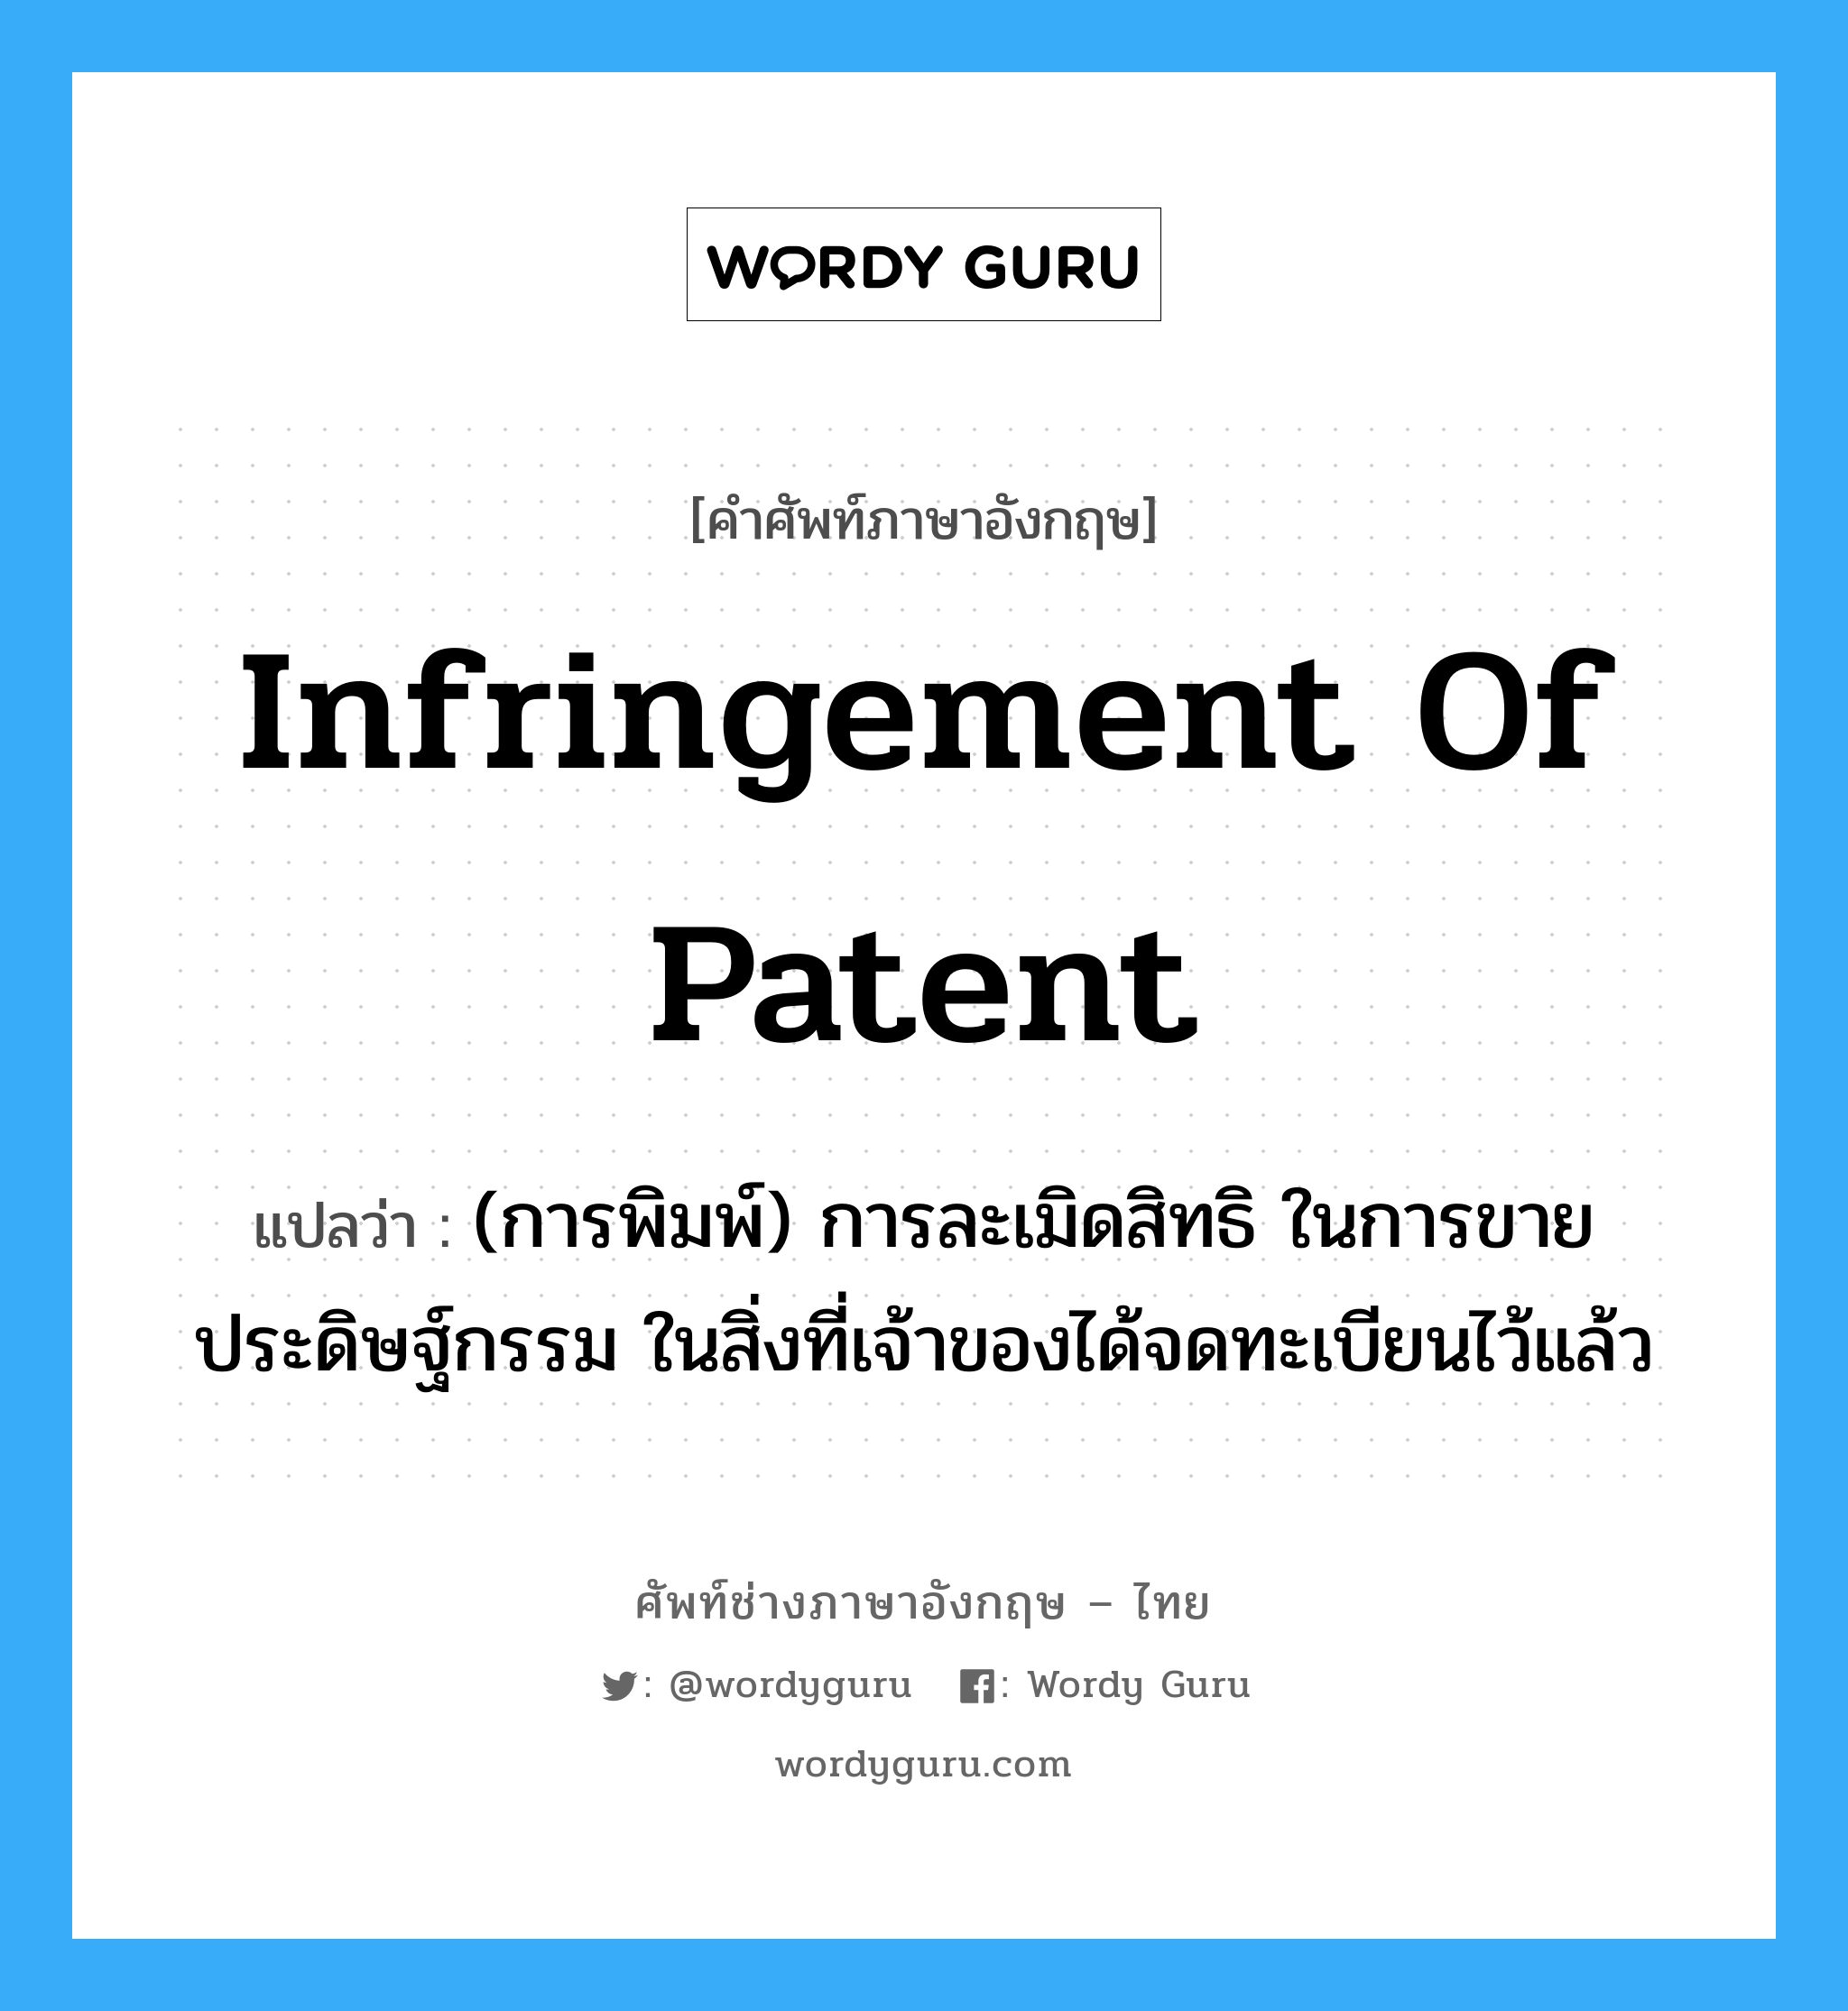 infringement of patent แปลว่า?, คำศัพท์ช่างภาษาอังกฤษ - ไทย infringement of patent คำศัพท์ภาษาอังกฤษ infringement of patent แปลว่า (การพิมพ์) การละเมิดสิทธิ ในการขายประดิษฐ์กรรม ในสิ่งที่เจ้าของได้จดทะเบียนไว้แล้ว